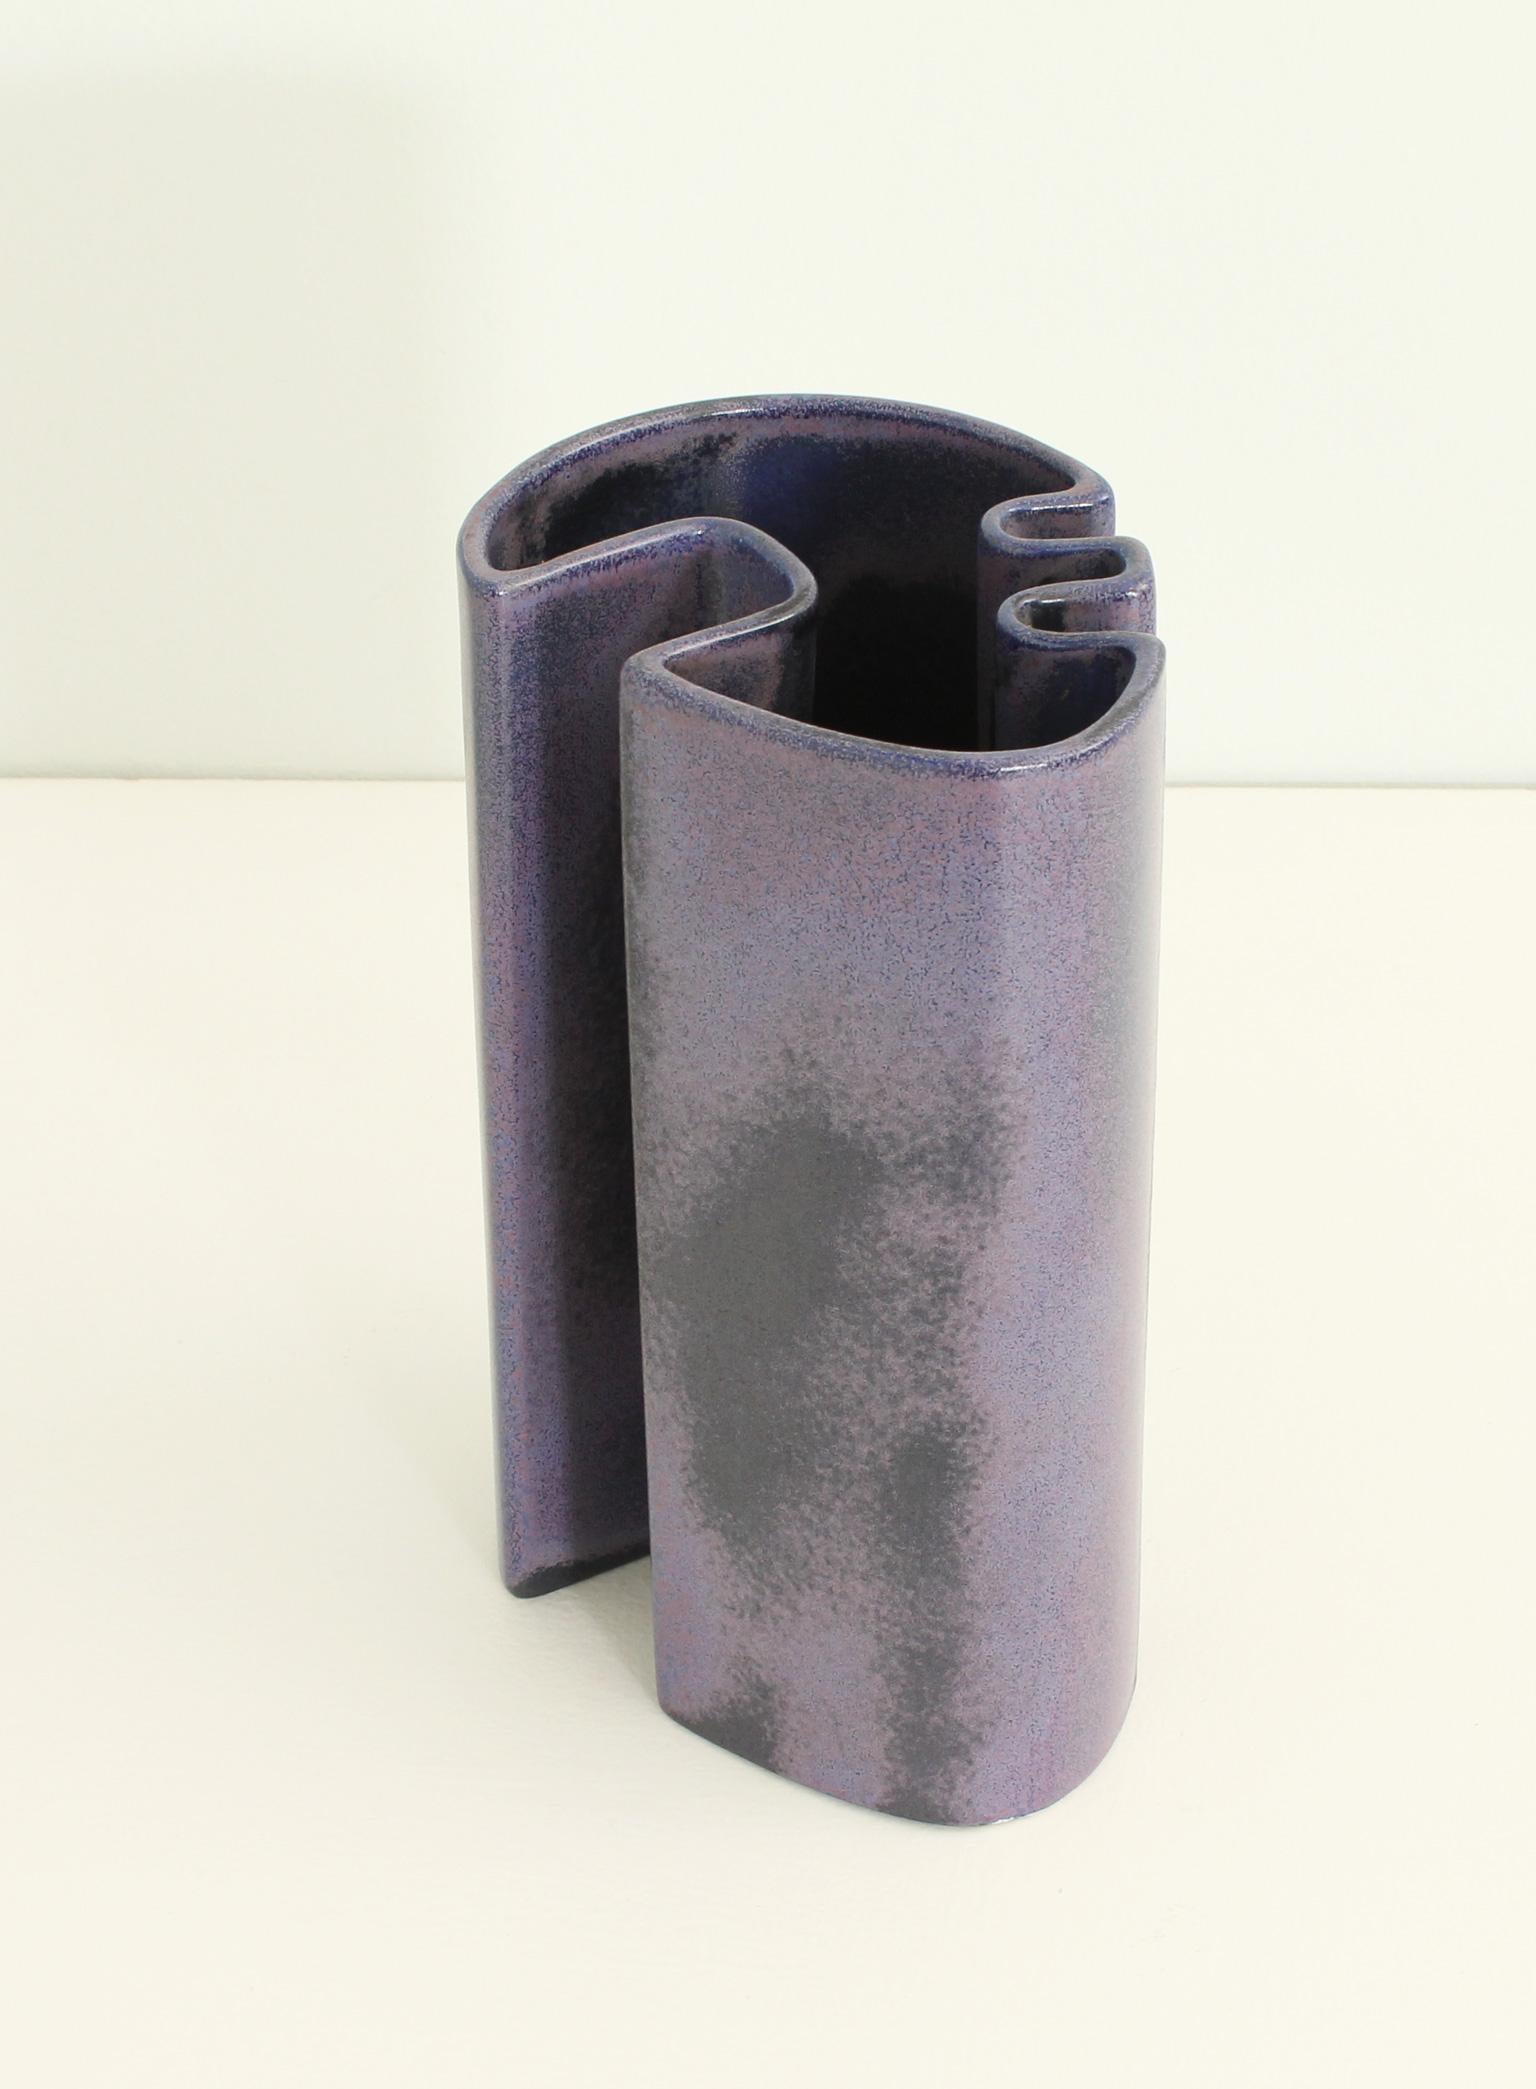 Mehrflächige Vase, entworfen 1968 von Angelo Mangiarotti für Brambilla Ceramiche, Italien. Glasierte Keramik in verschiedenen Farbtönen. Etikettiert.